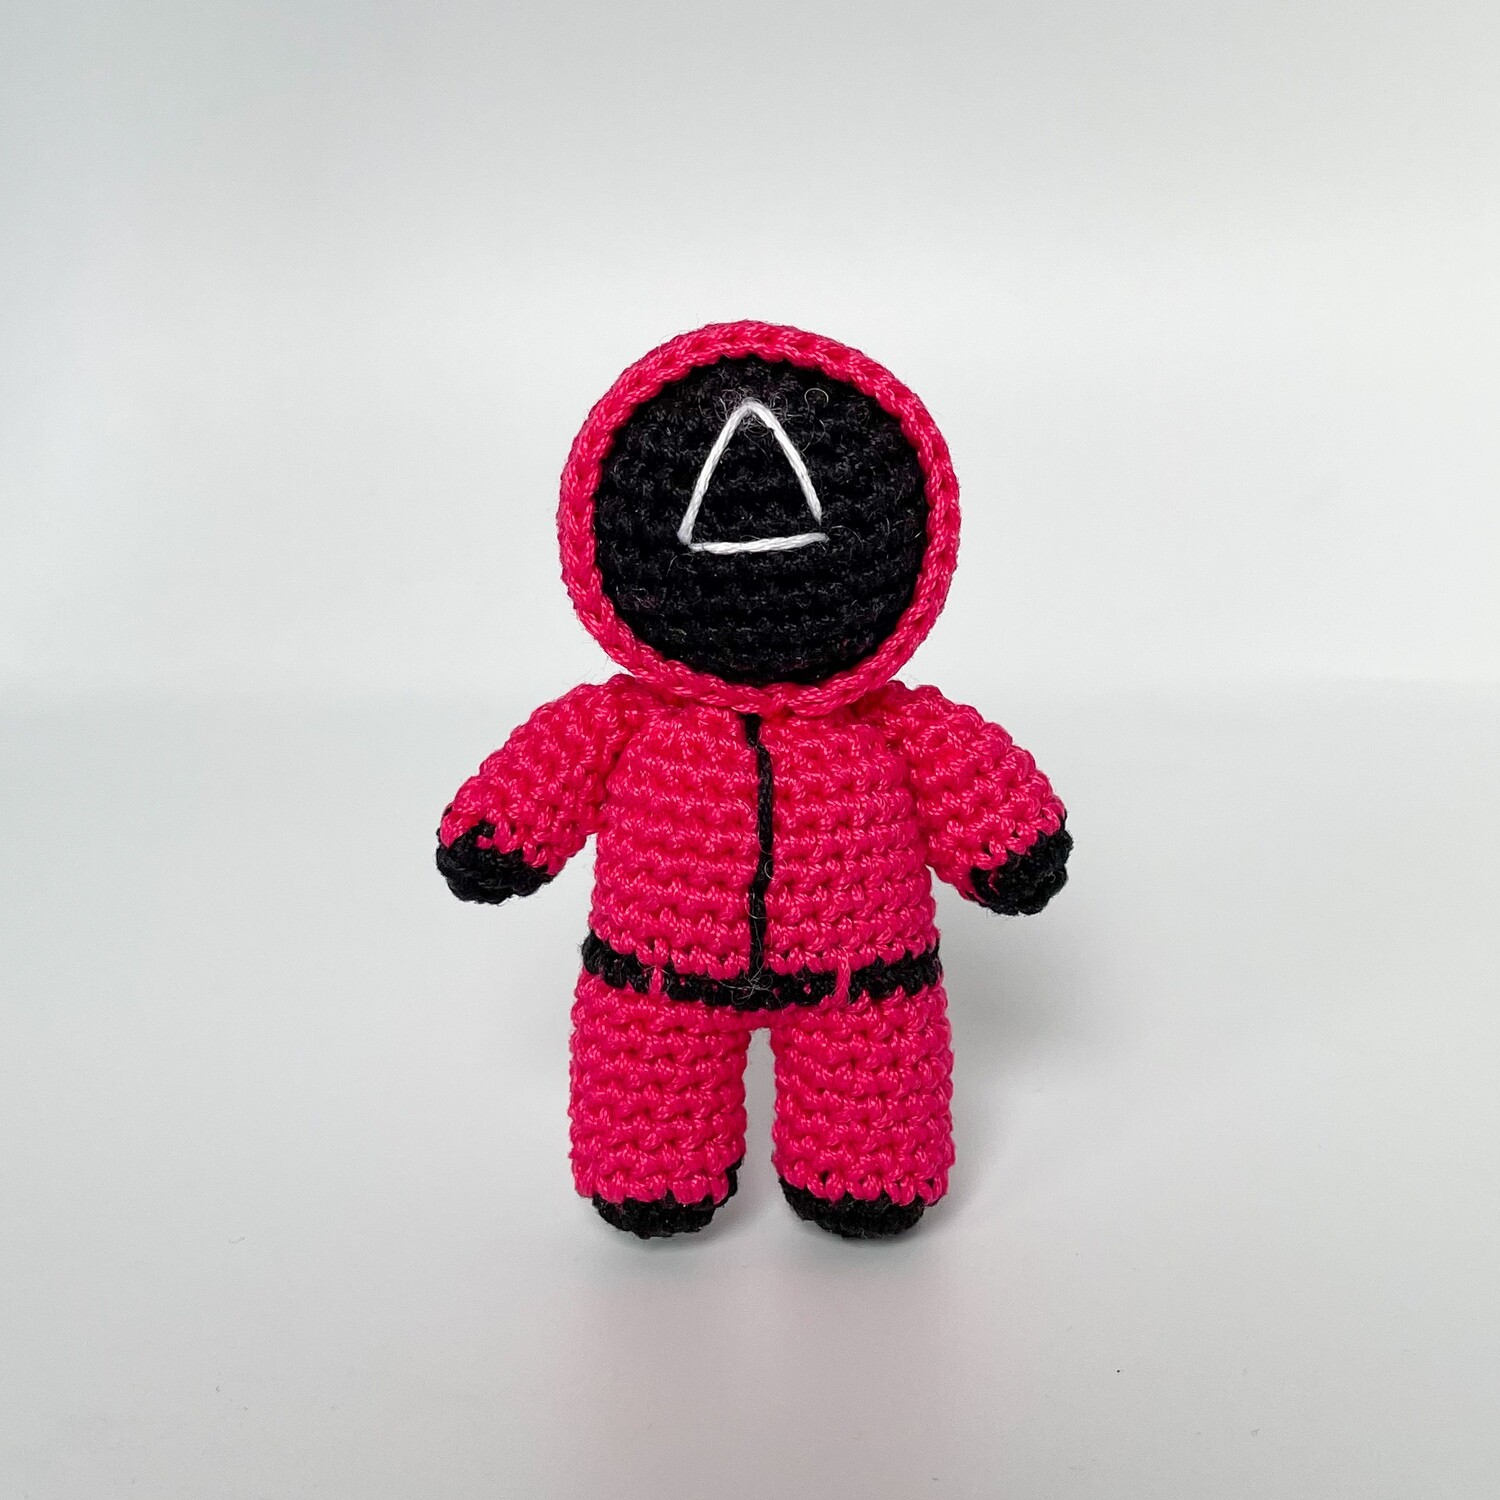 Pink soldier amigurumi doll/keychain